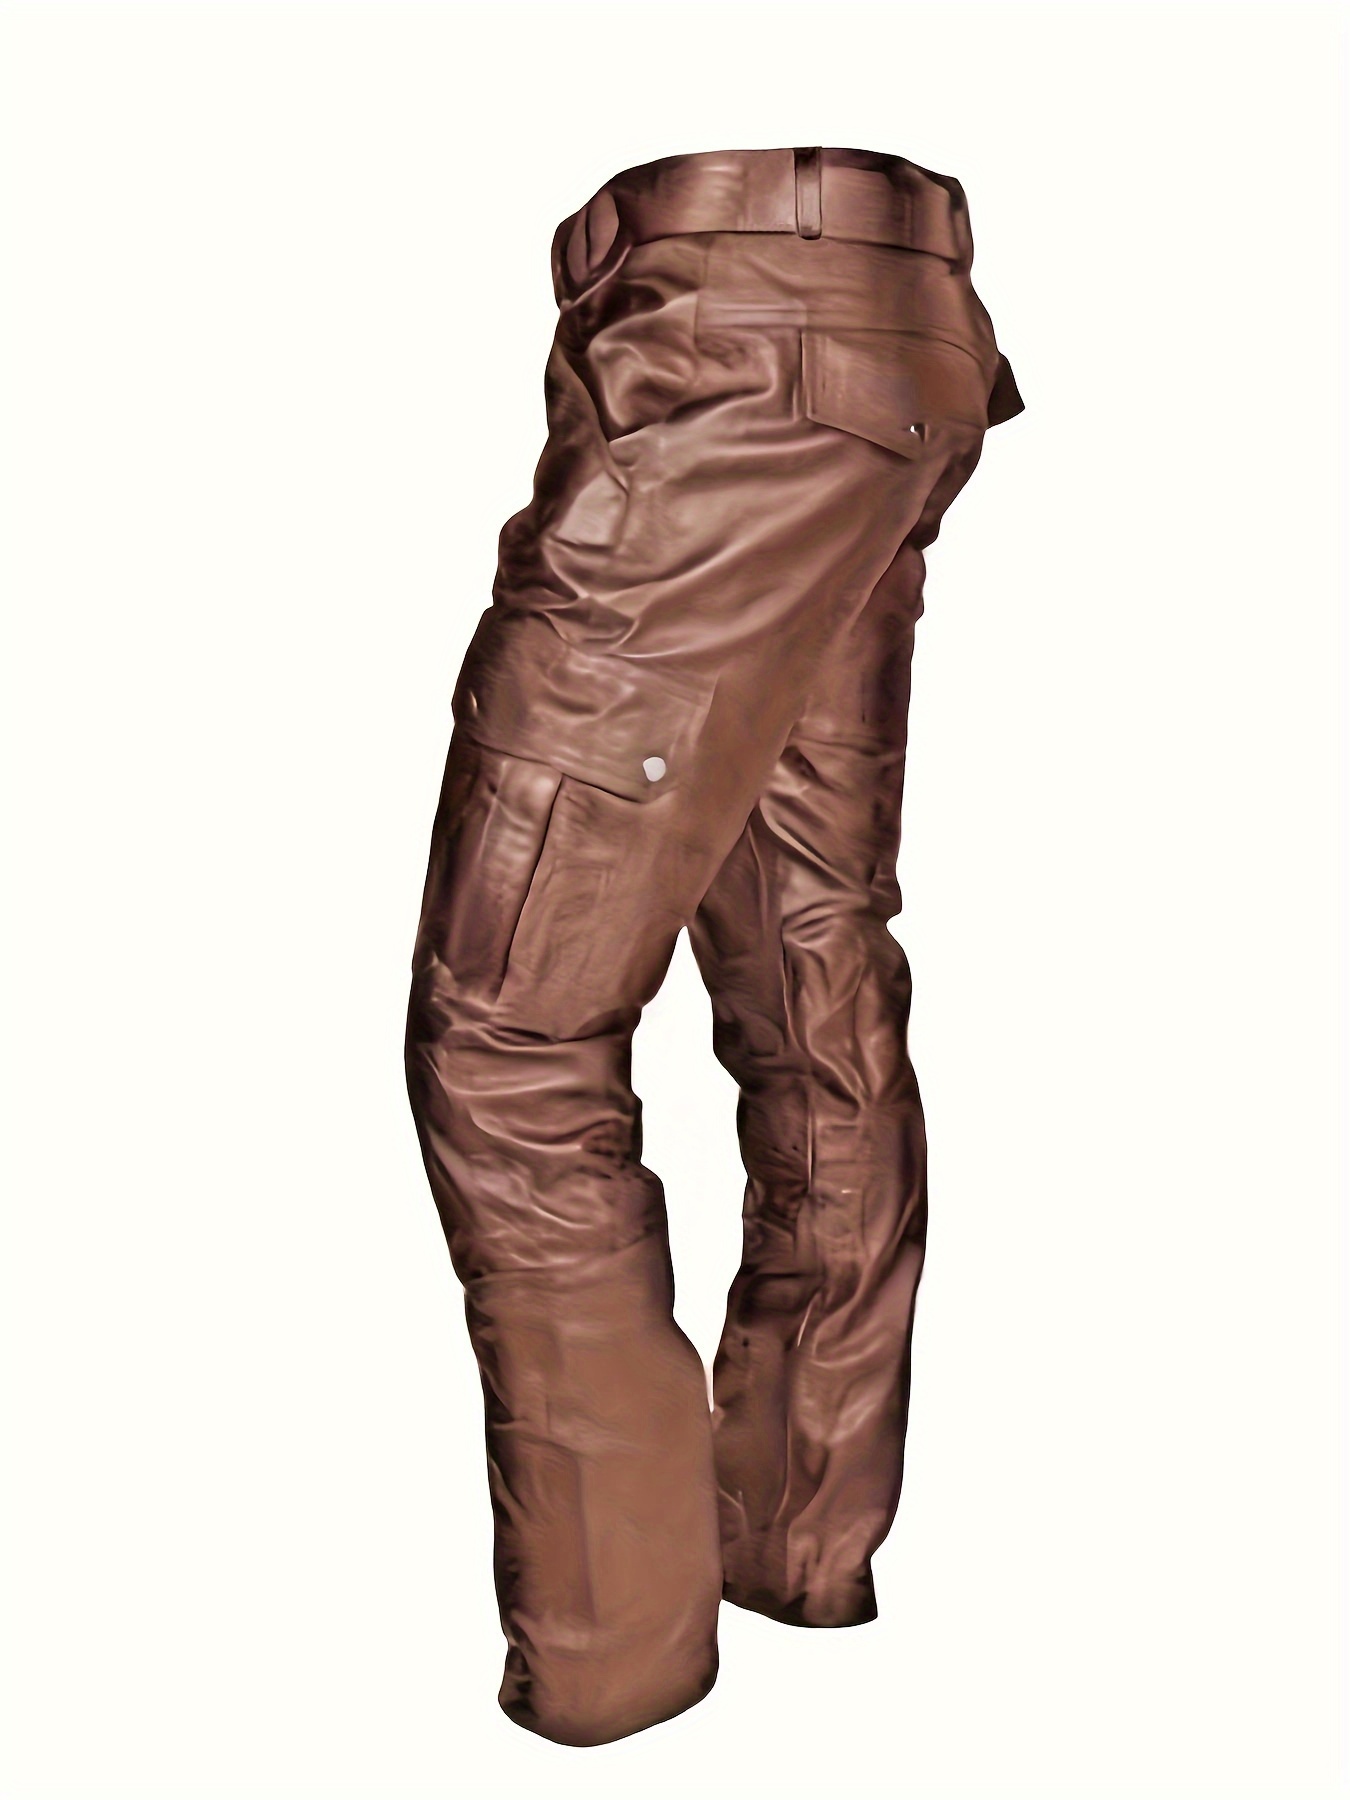 Pantalón de cuero sintético con bolsillos cargo grandes